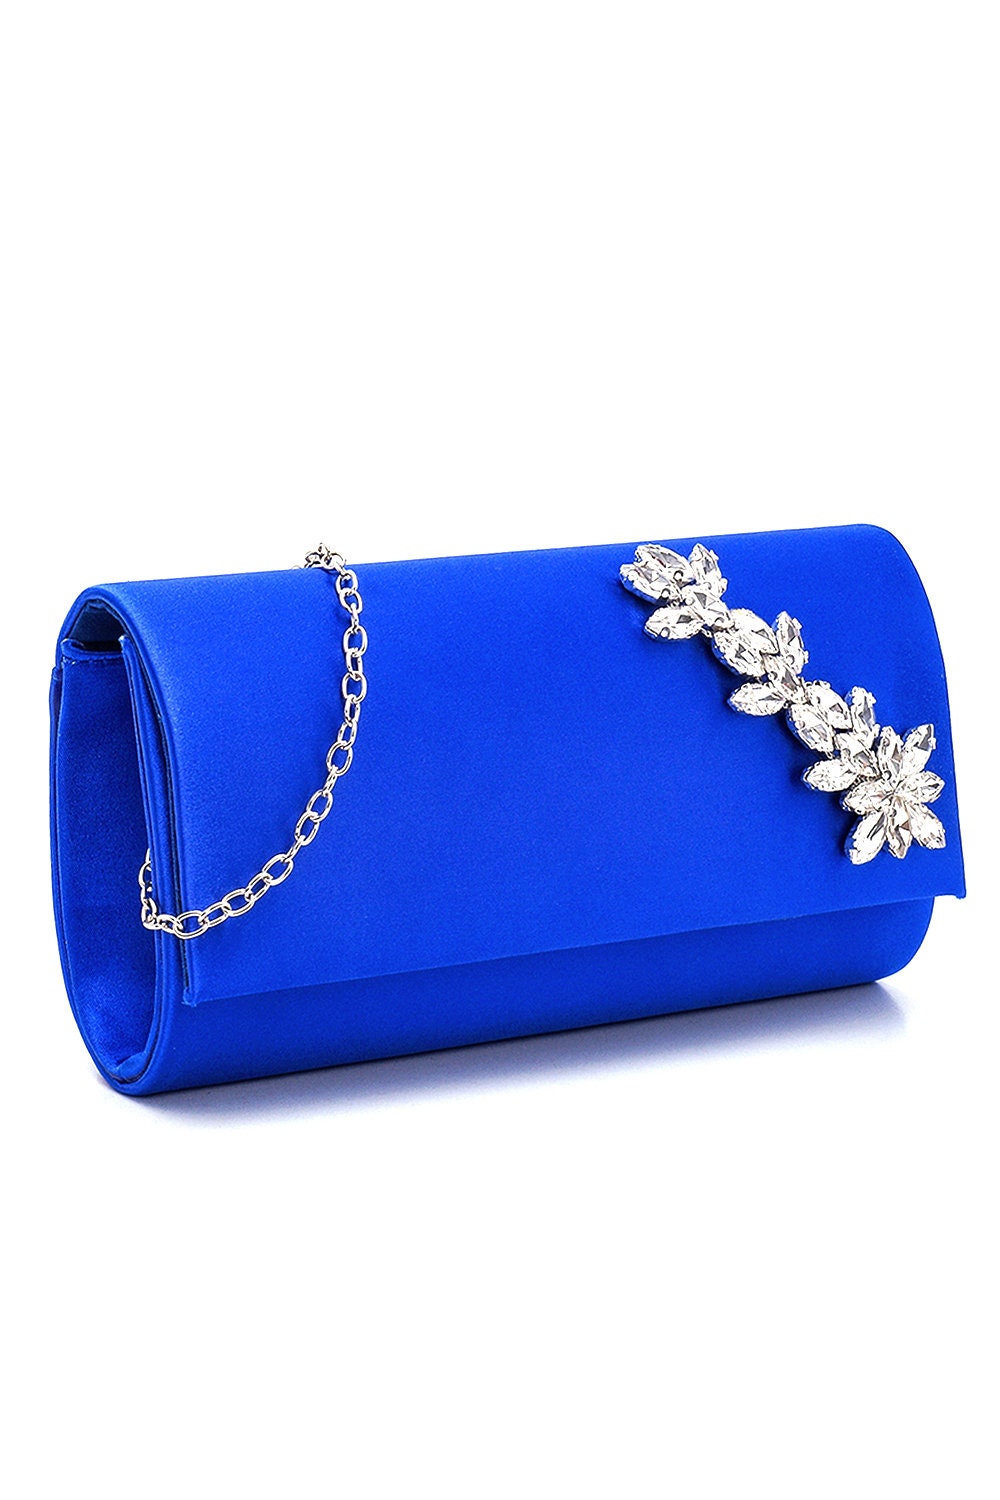 Royal blue rimestone party purse – Selina Habibti Attire